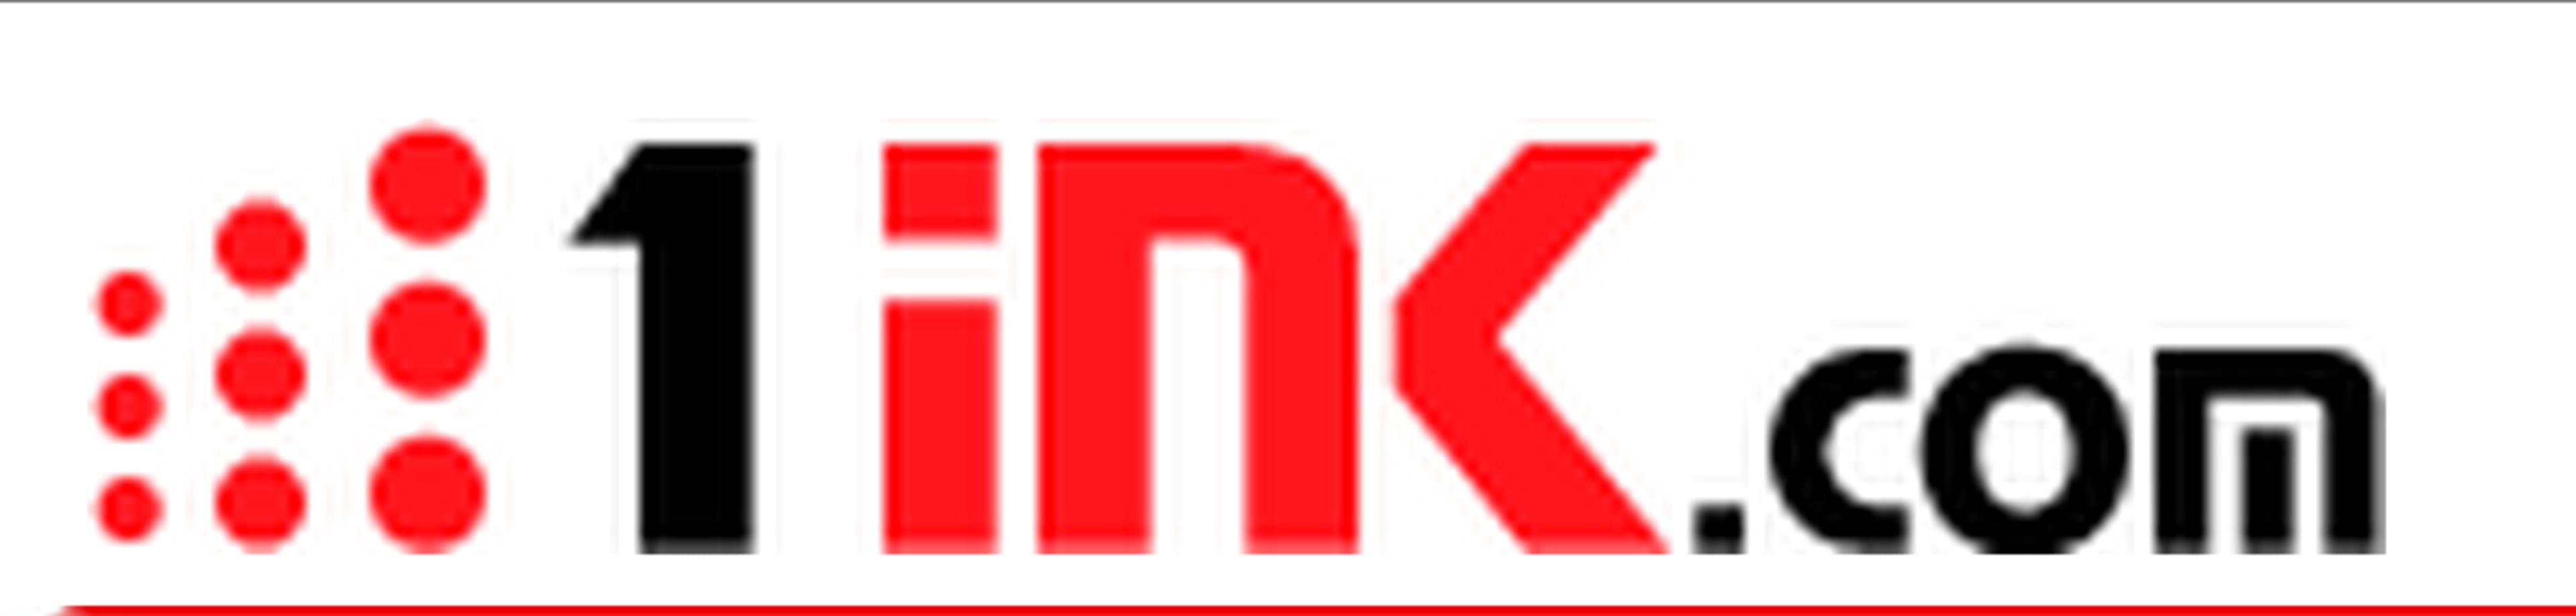 1ink.com